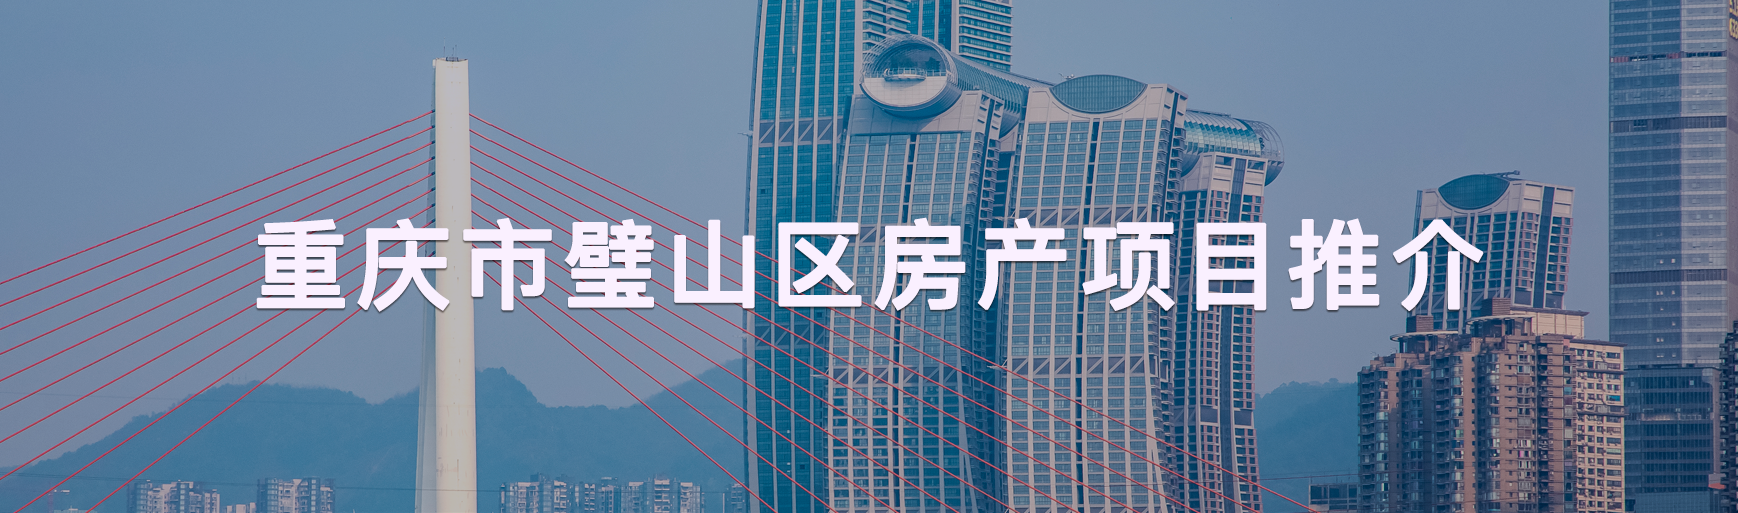 重庆市房产项目推介